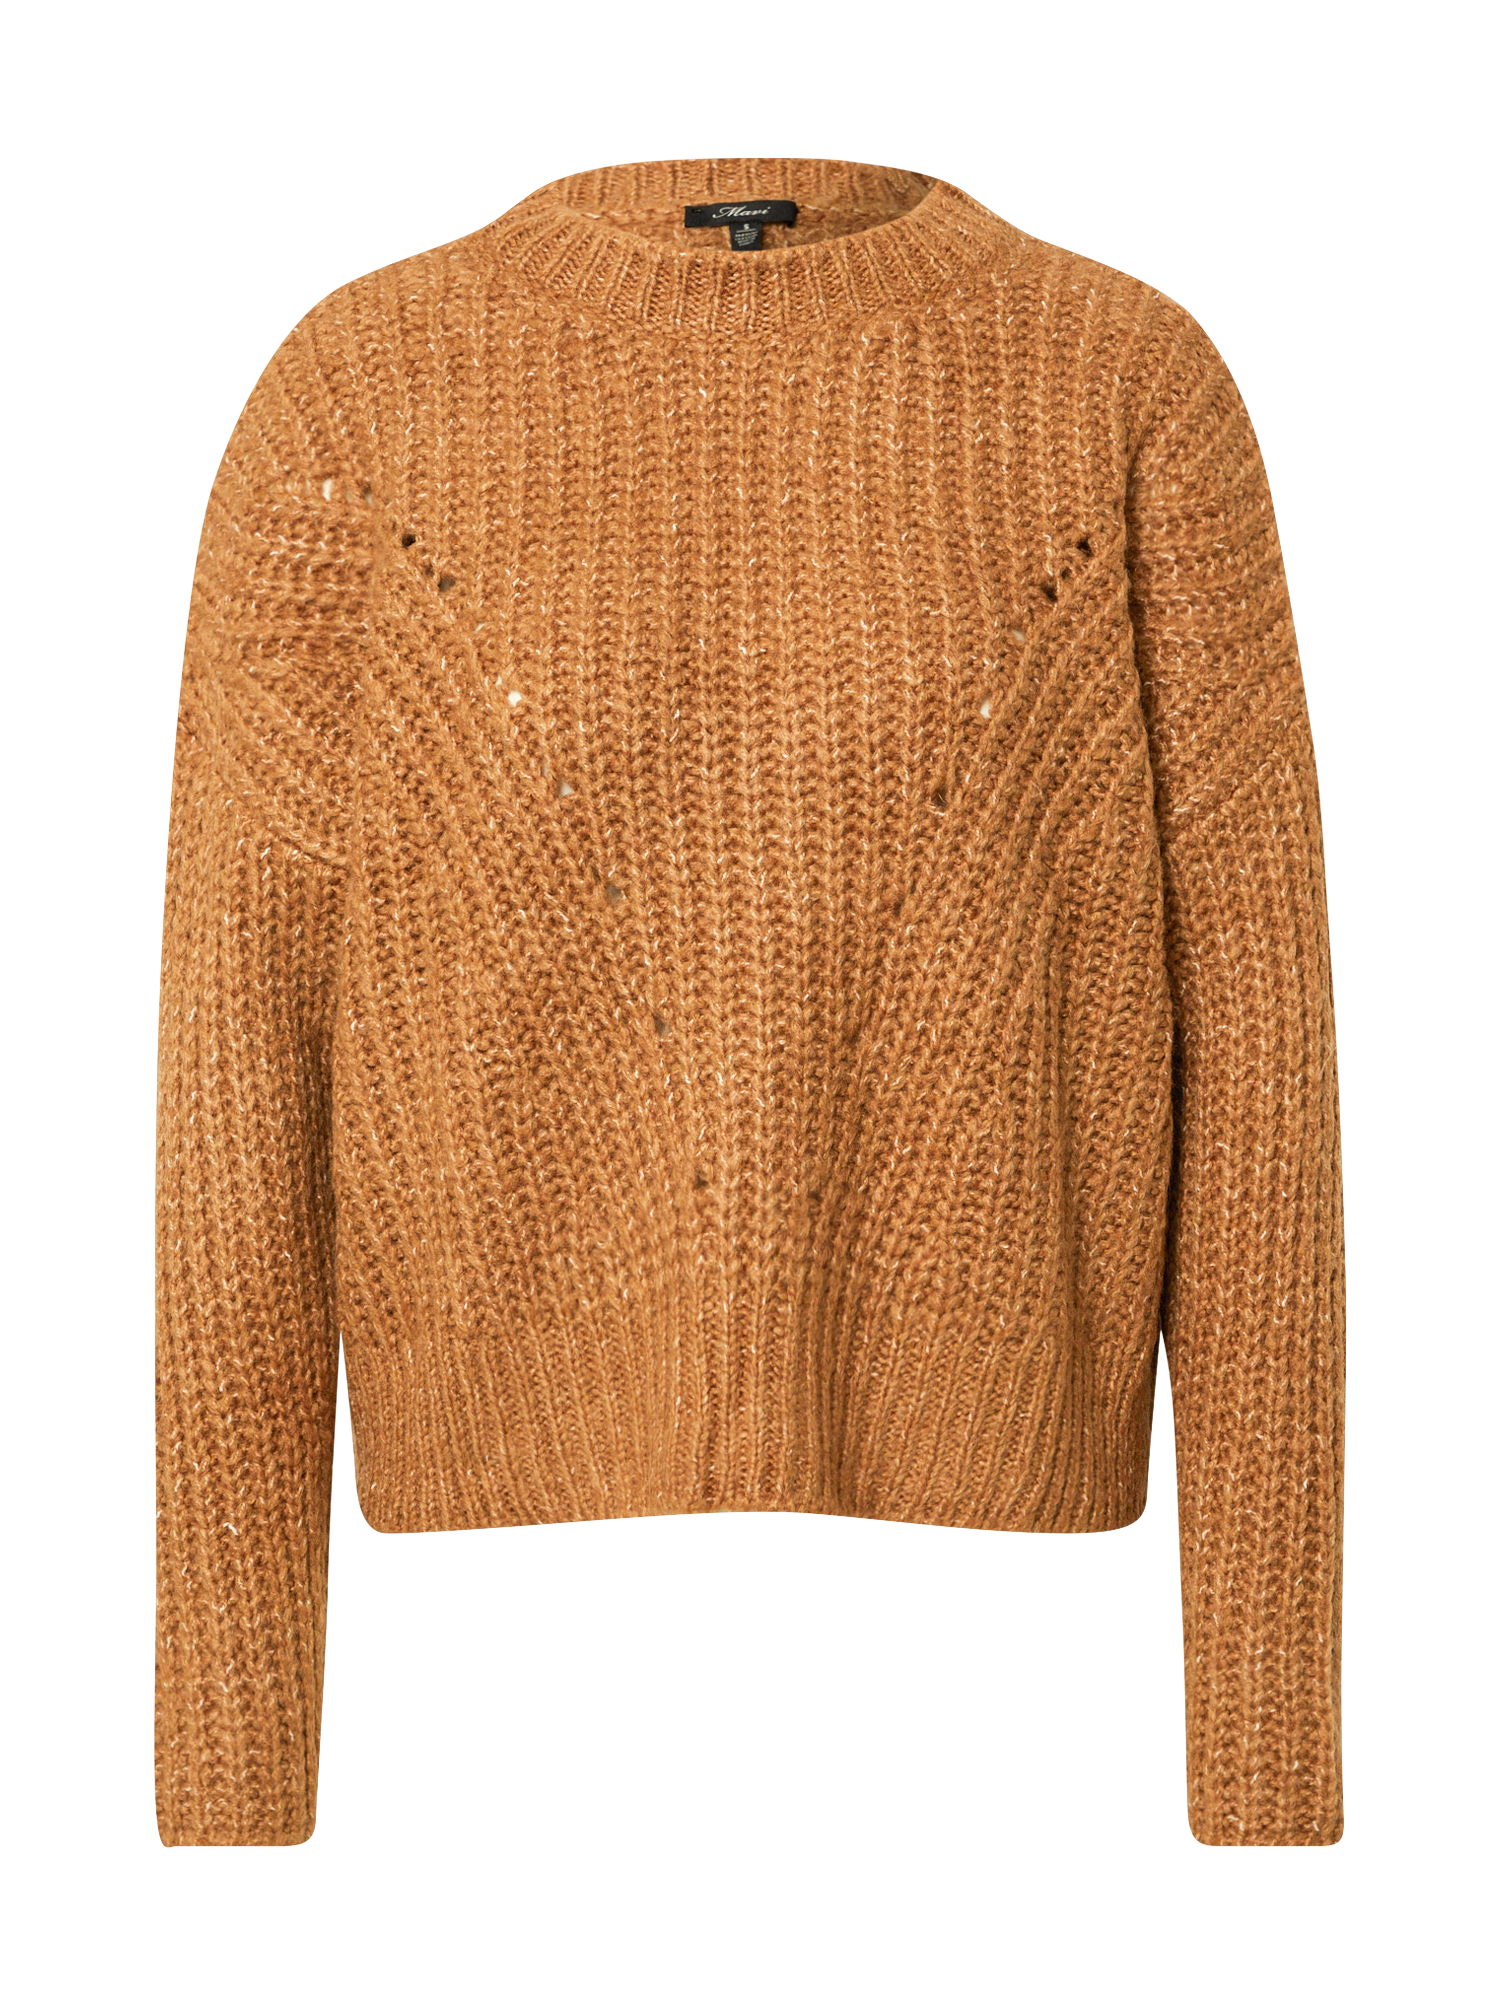 Swetry & dzianina Odzież Mavi Sweter w kolorze Brązowym 